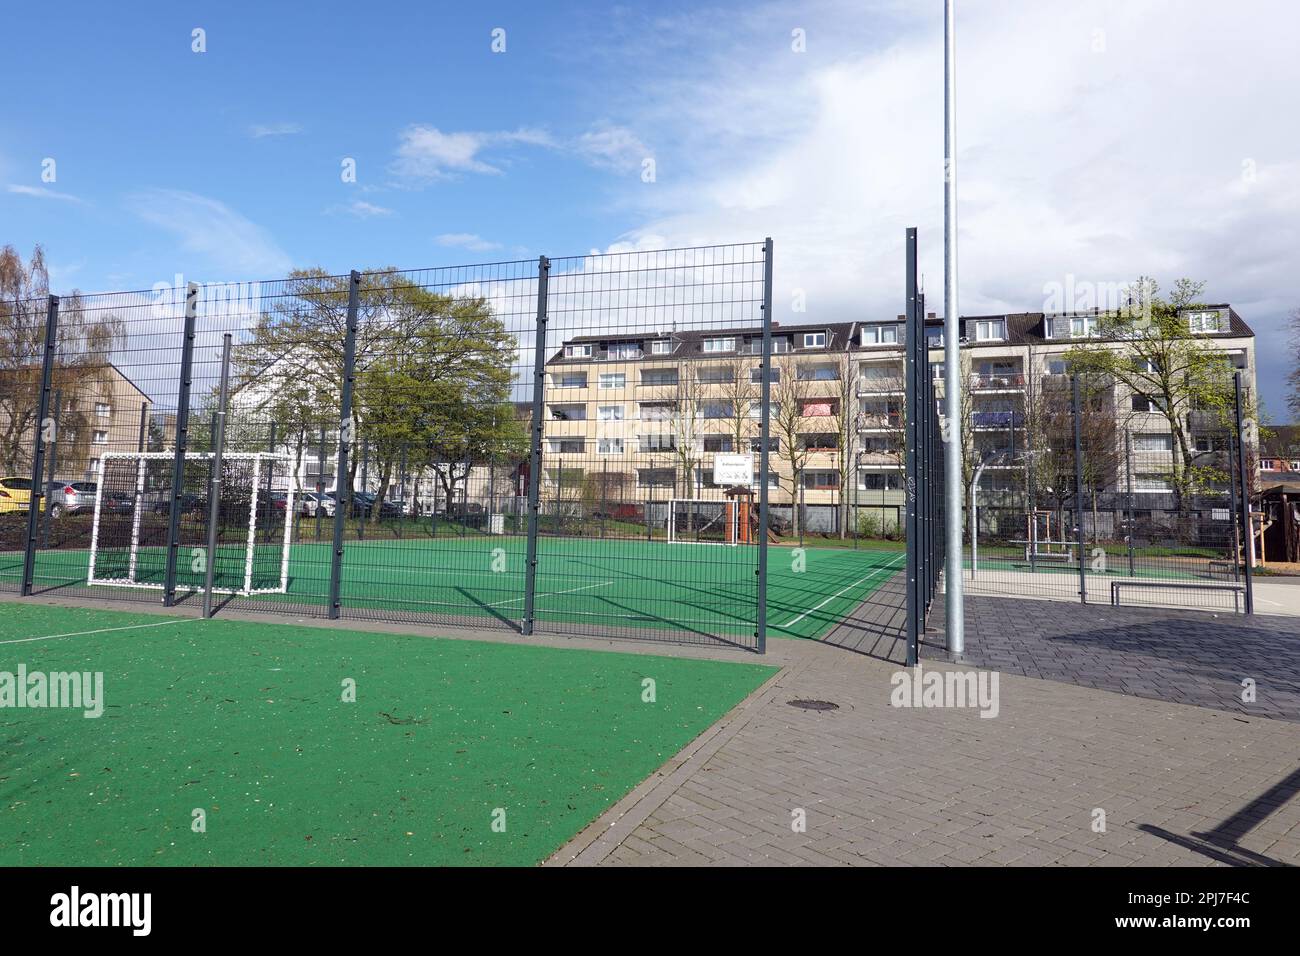 Spiel- und Sportplatz in einem Wohnviertel von Buchheim, Nordrhein-Westfalen, Deutschland, Köln Stock Photo